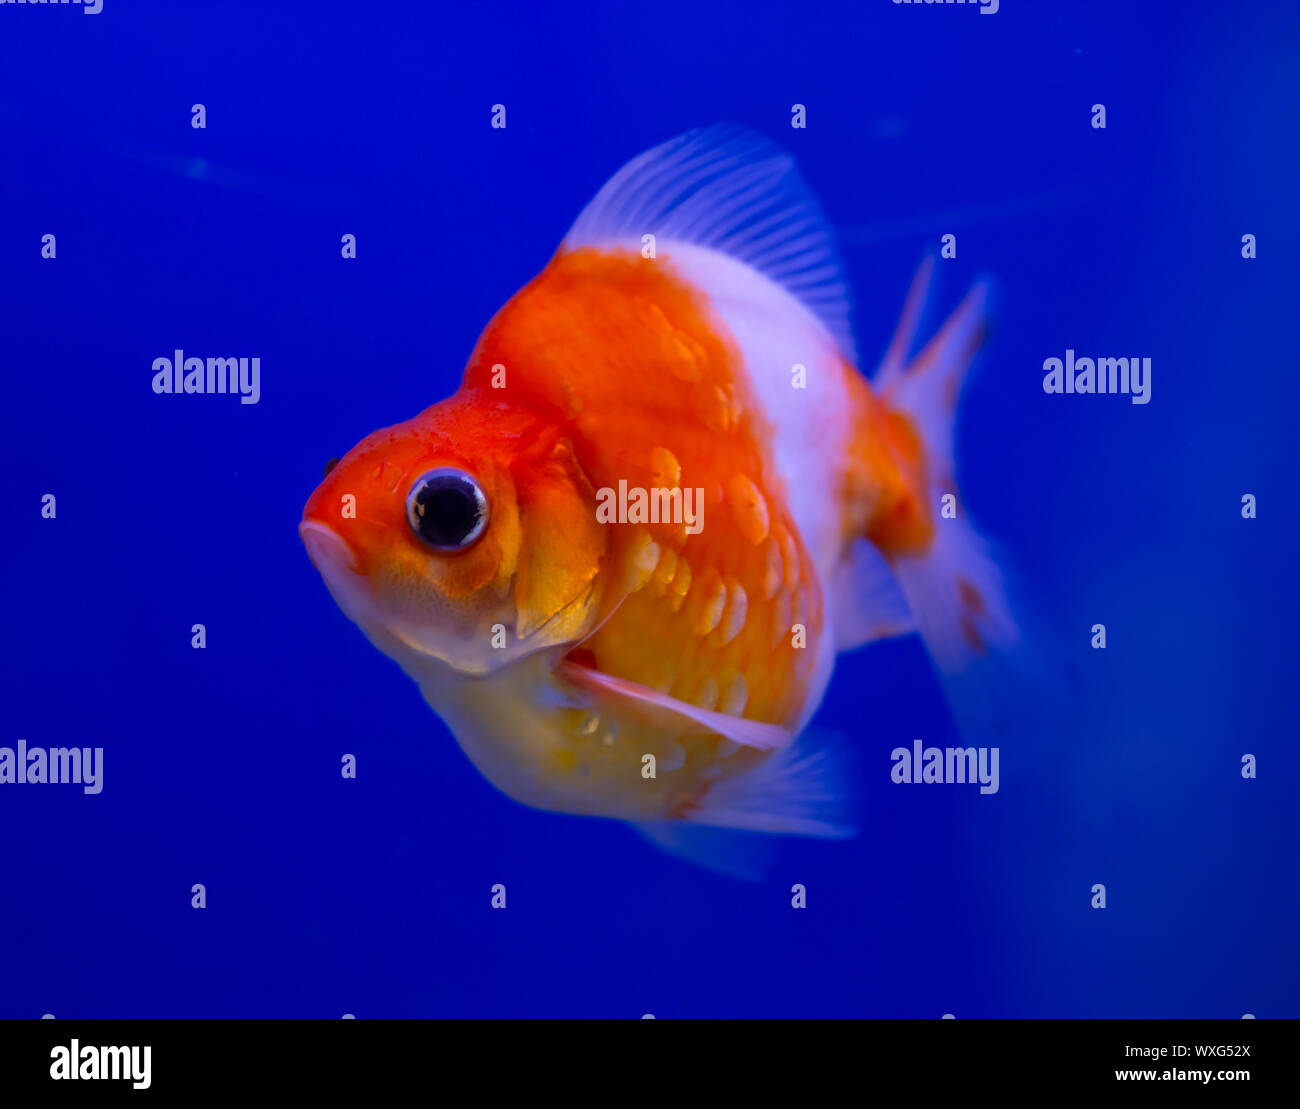 Red and white Ryukin goldfish on blue background Stock Photo